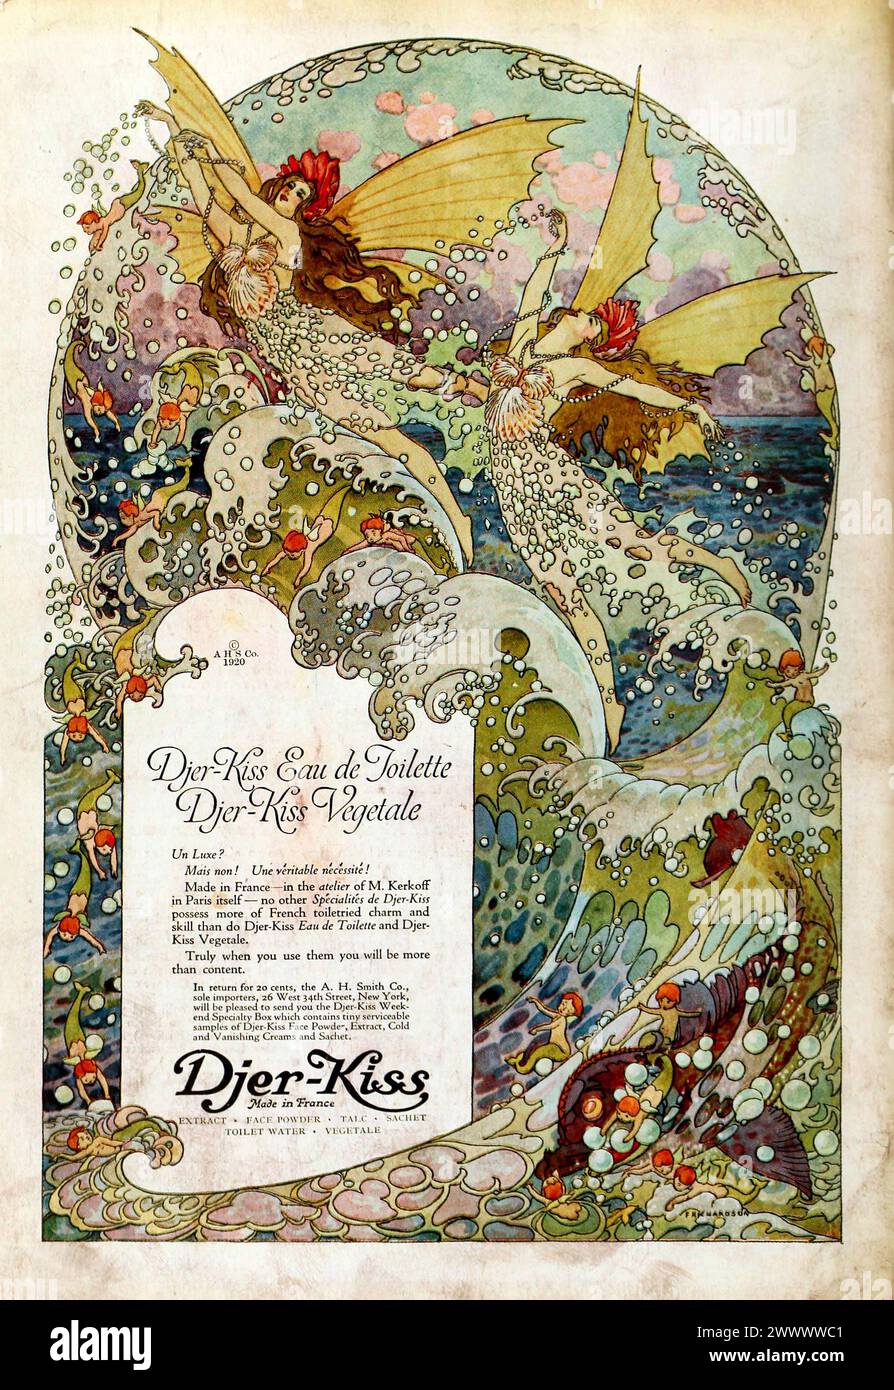 Vintage Magazine Art Nouveau pubblicità per ' Djer-Kiss Eau de toilette' 1920 Foto Stock